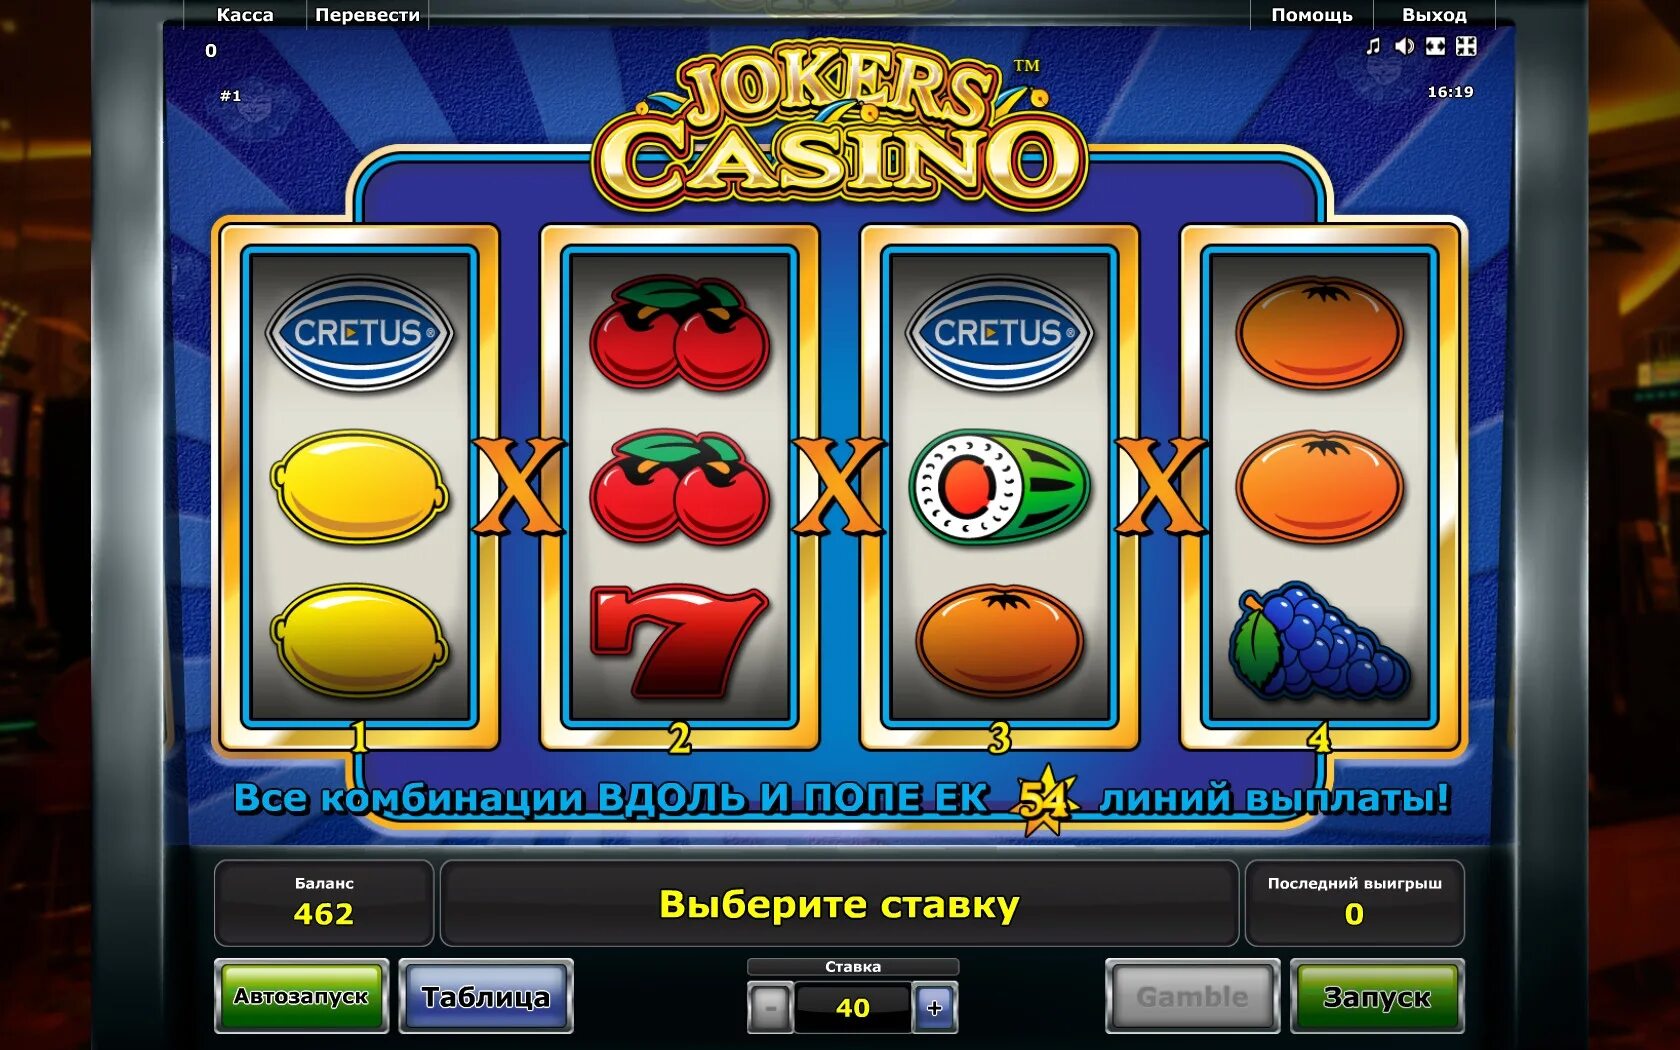 Играть с минимальным депозитом. Автомат казино. Слоты казино. Экран игрового автомата в казино. Популярные аппараты казино.